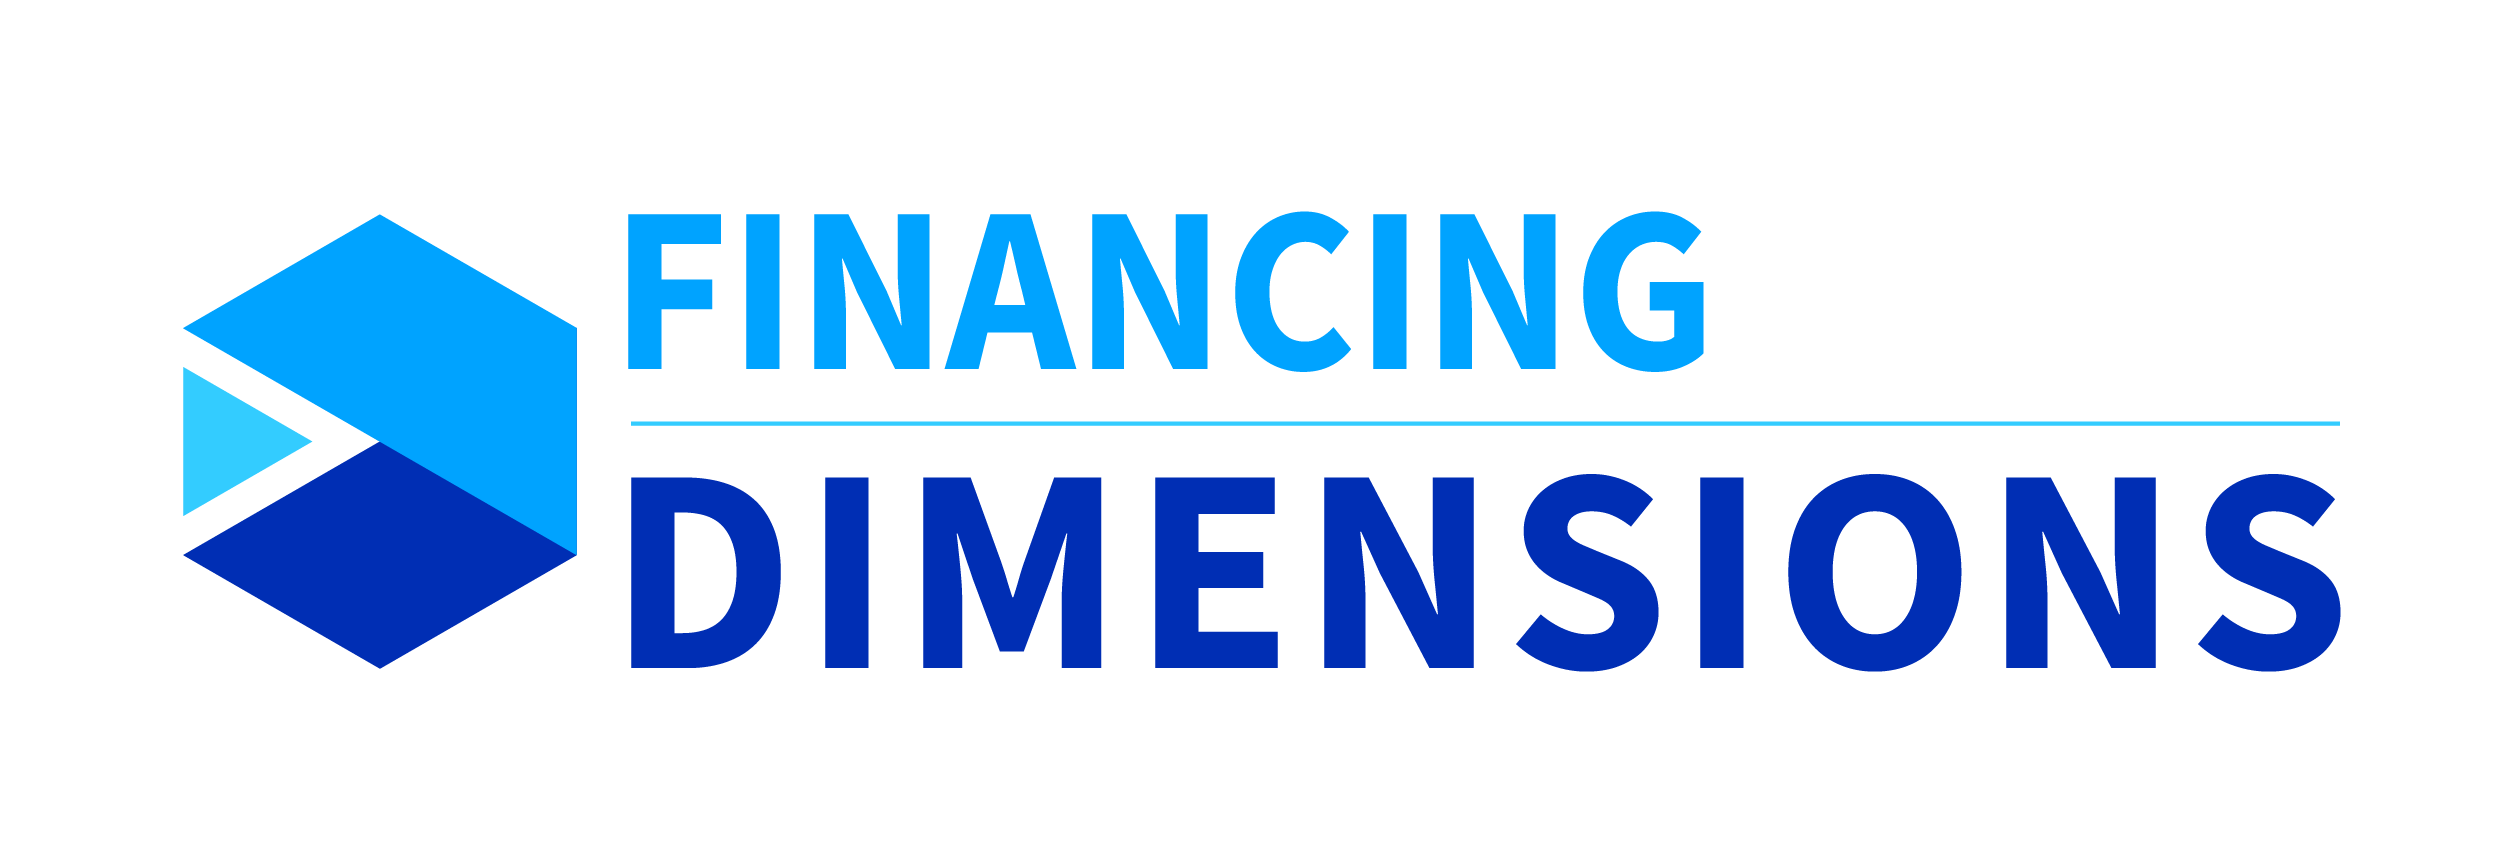 Acceltech Pte Ltd - Dimensiones de la financiación